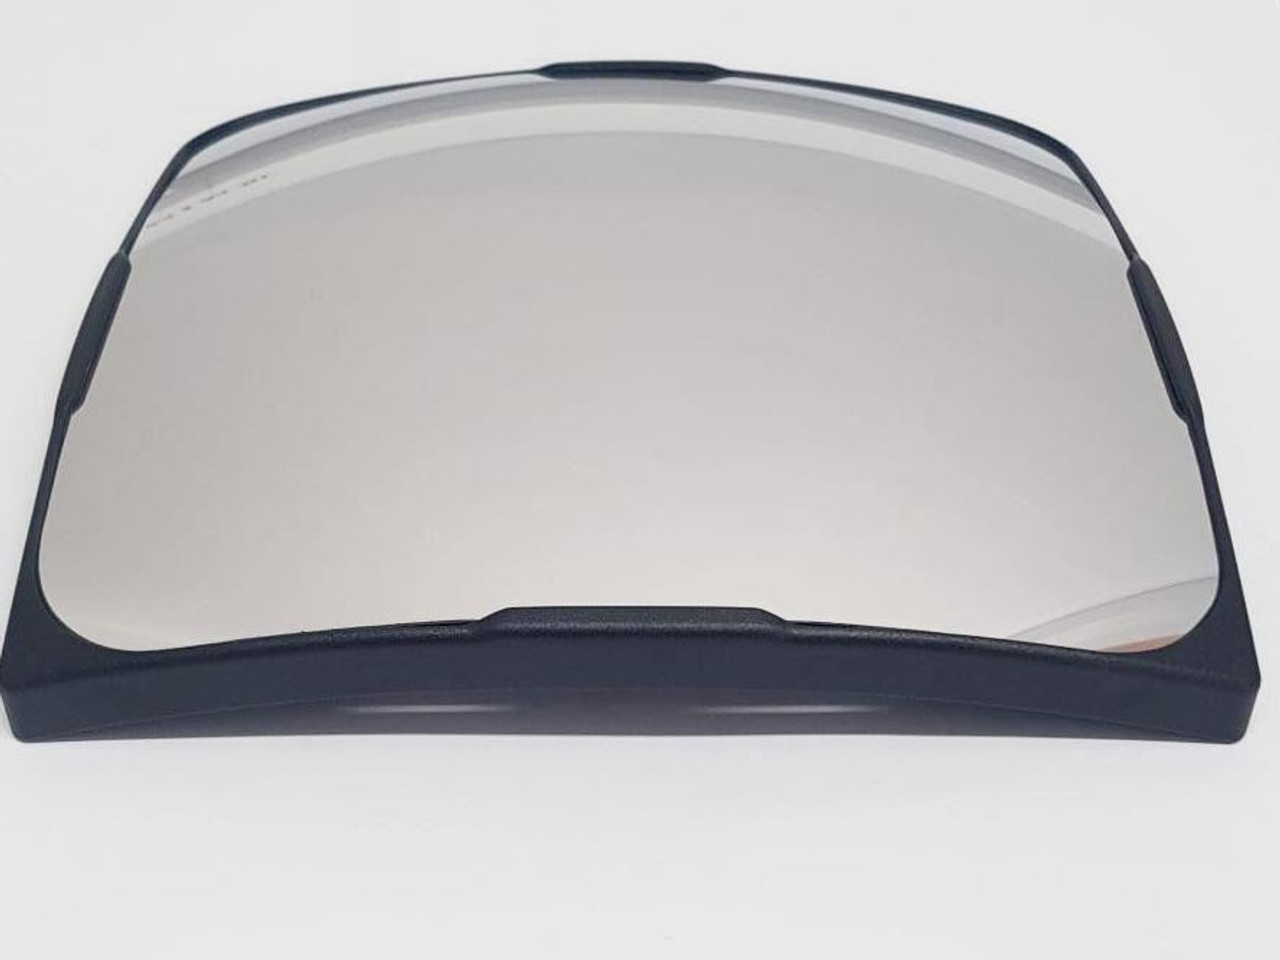 CNH Wide Angle Mirror Glass 12v Heated - Mekra 191036008, 48025204